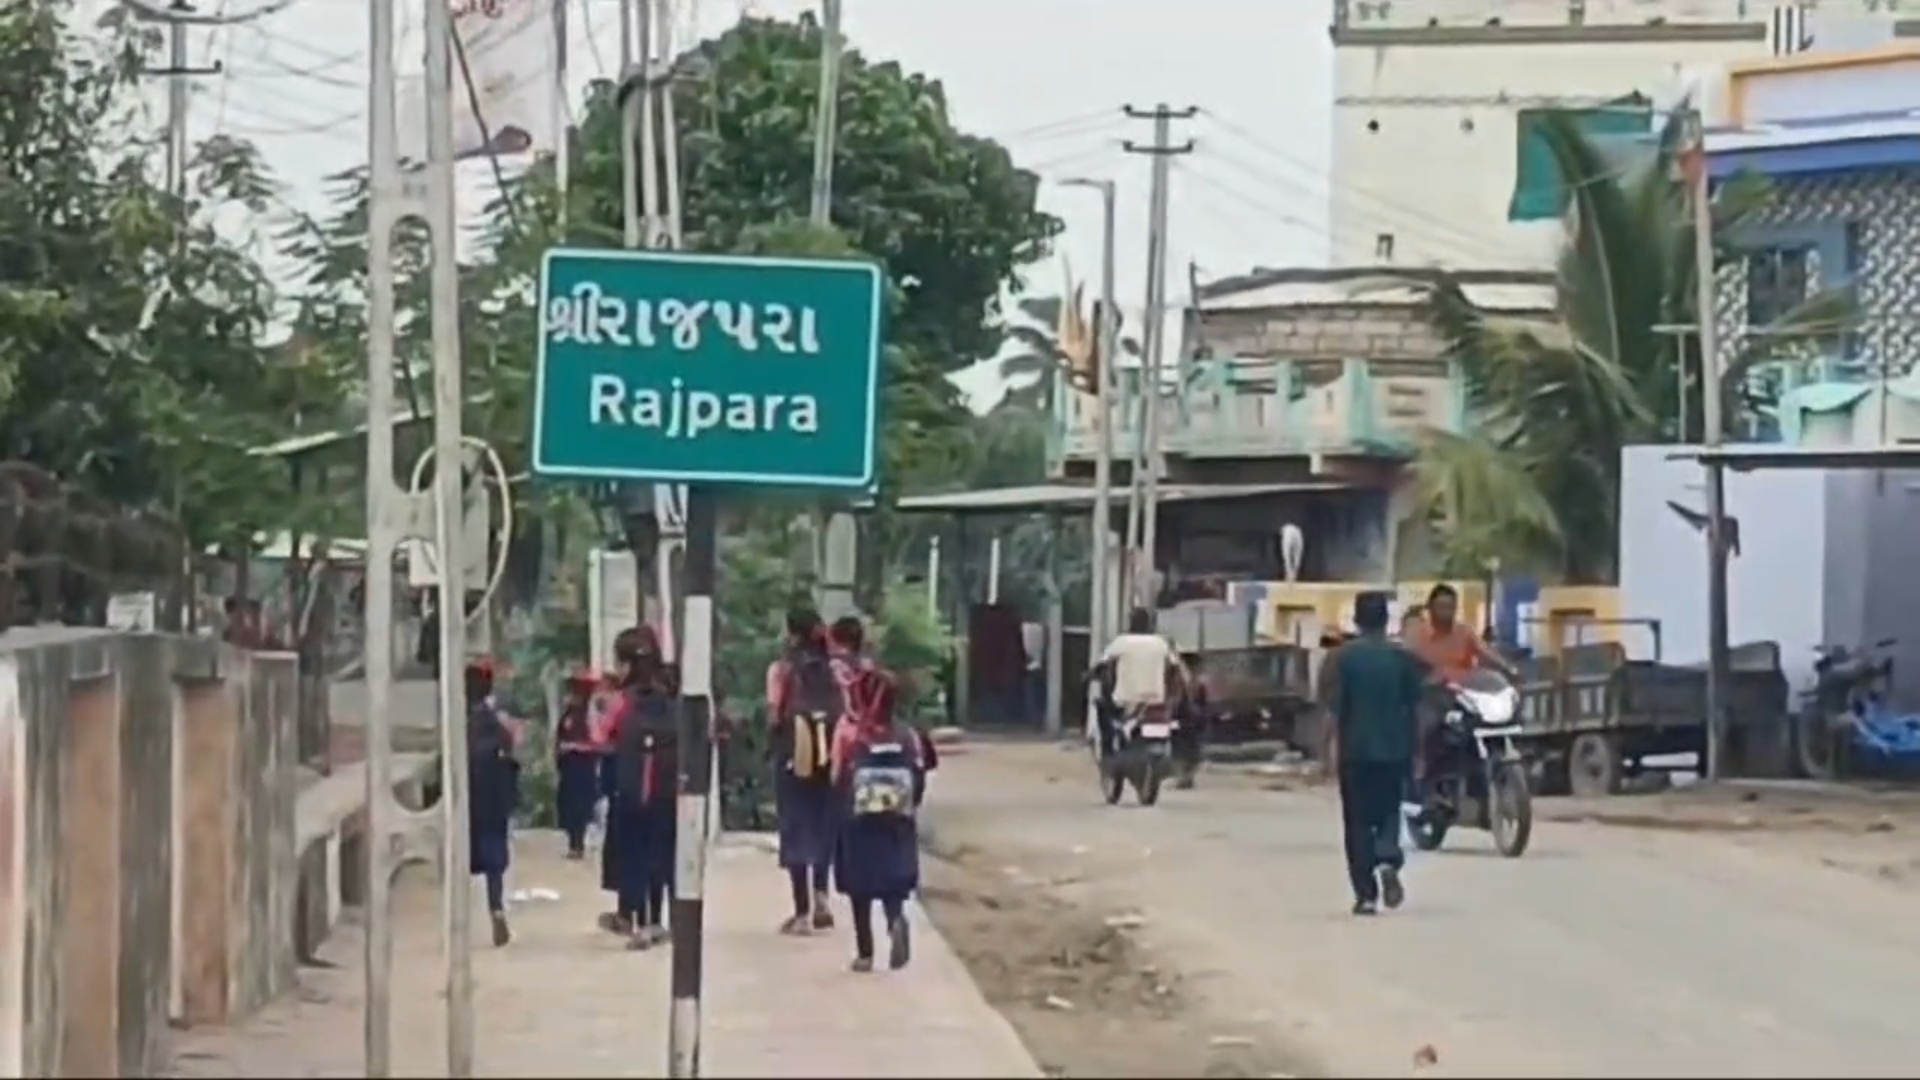 રાજપરા ગામના વિદ્યાર્થીઓને શિક્ષણમાટે ભટકવું પડે છે